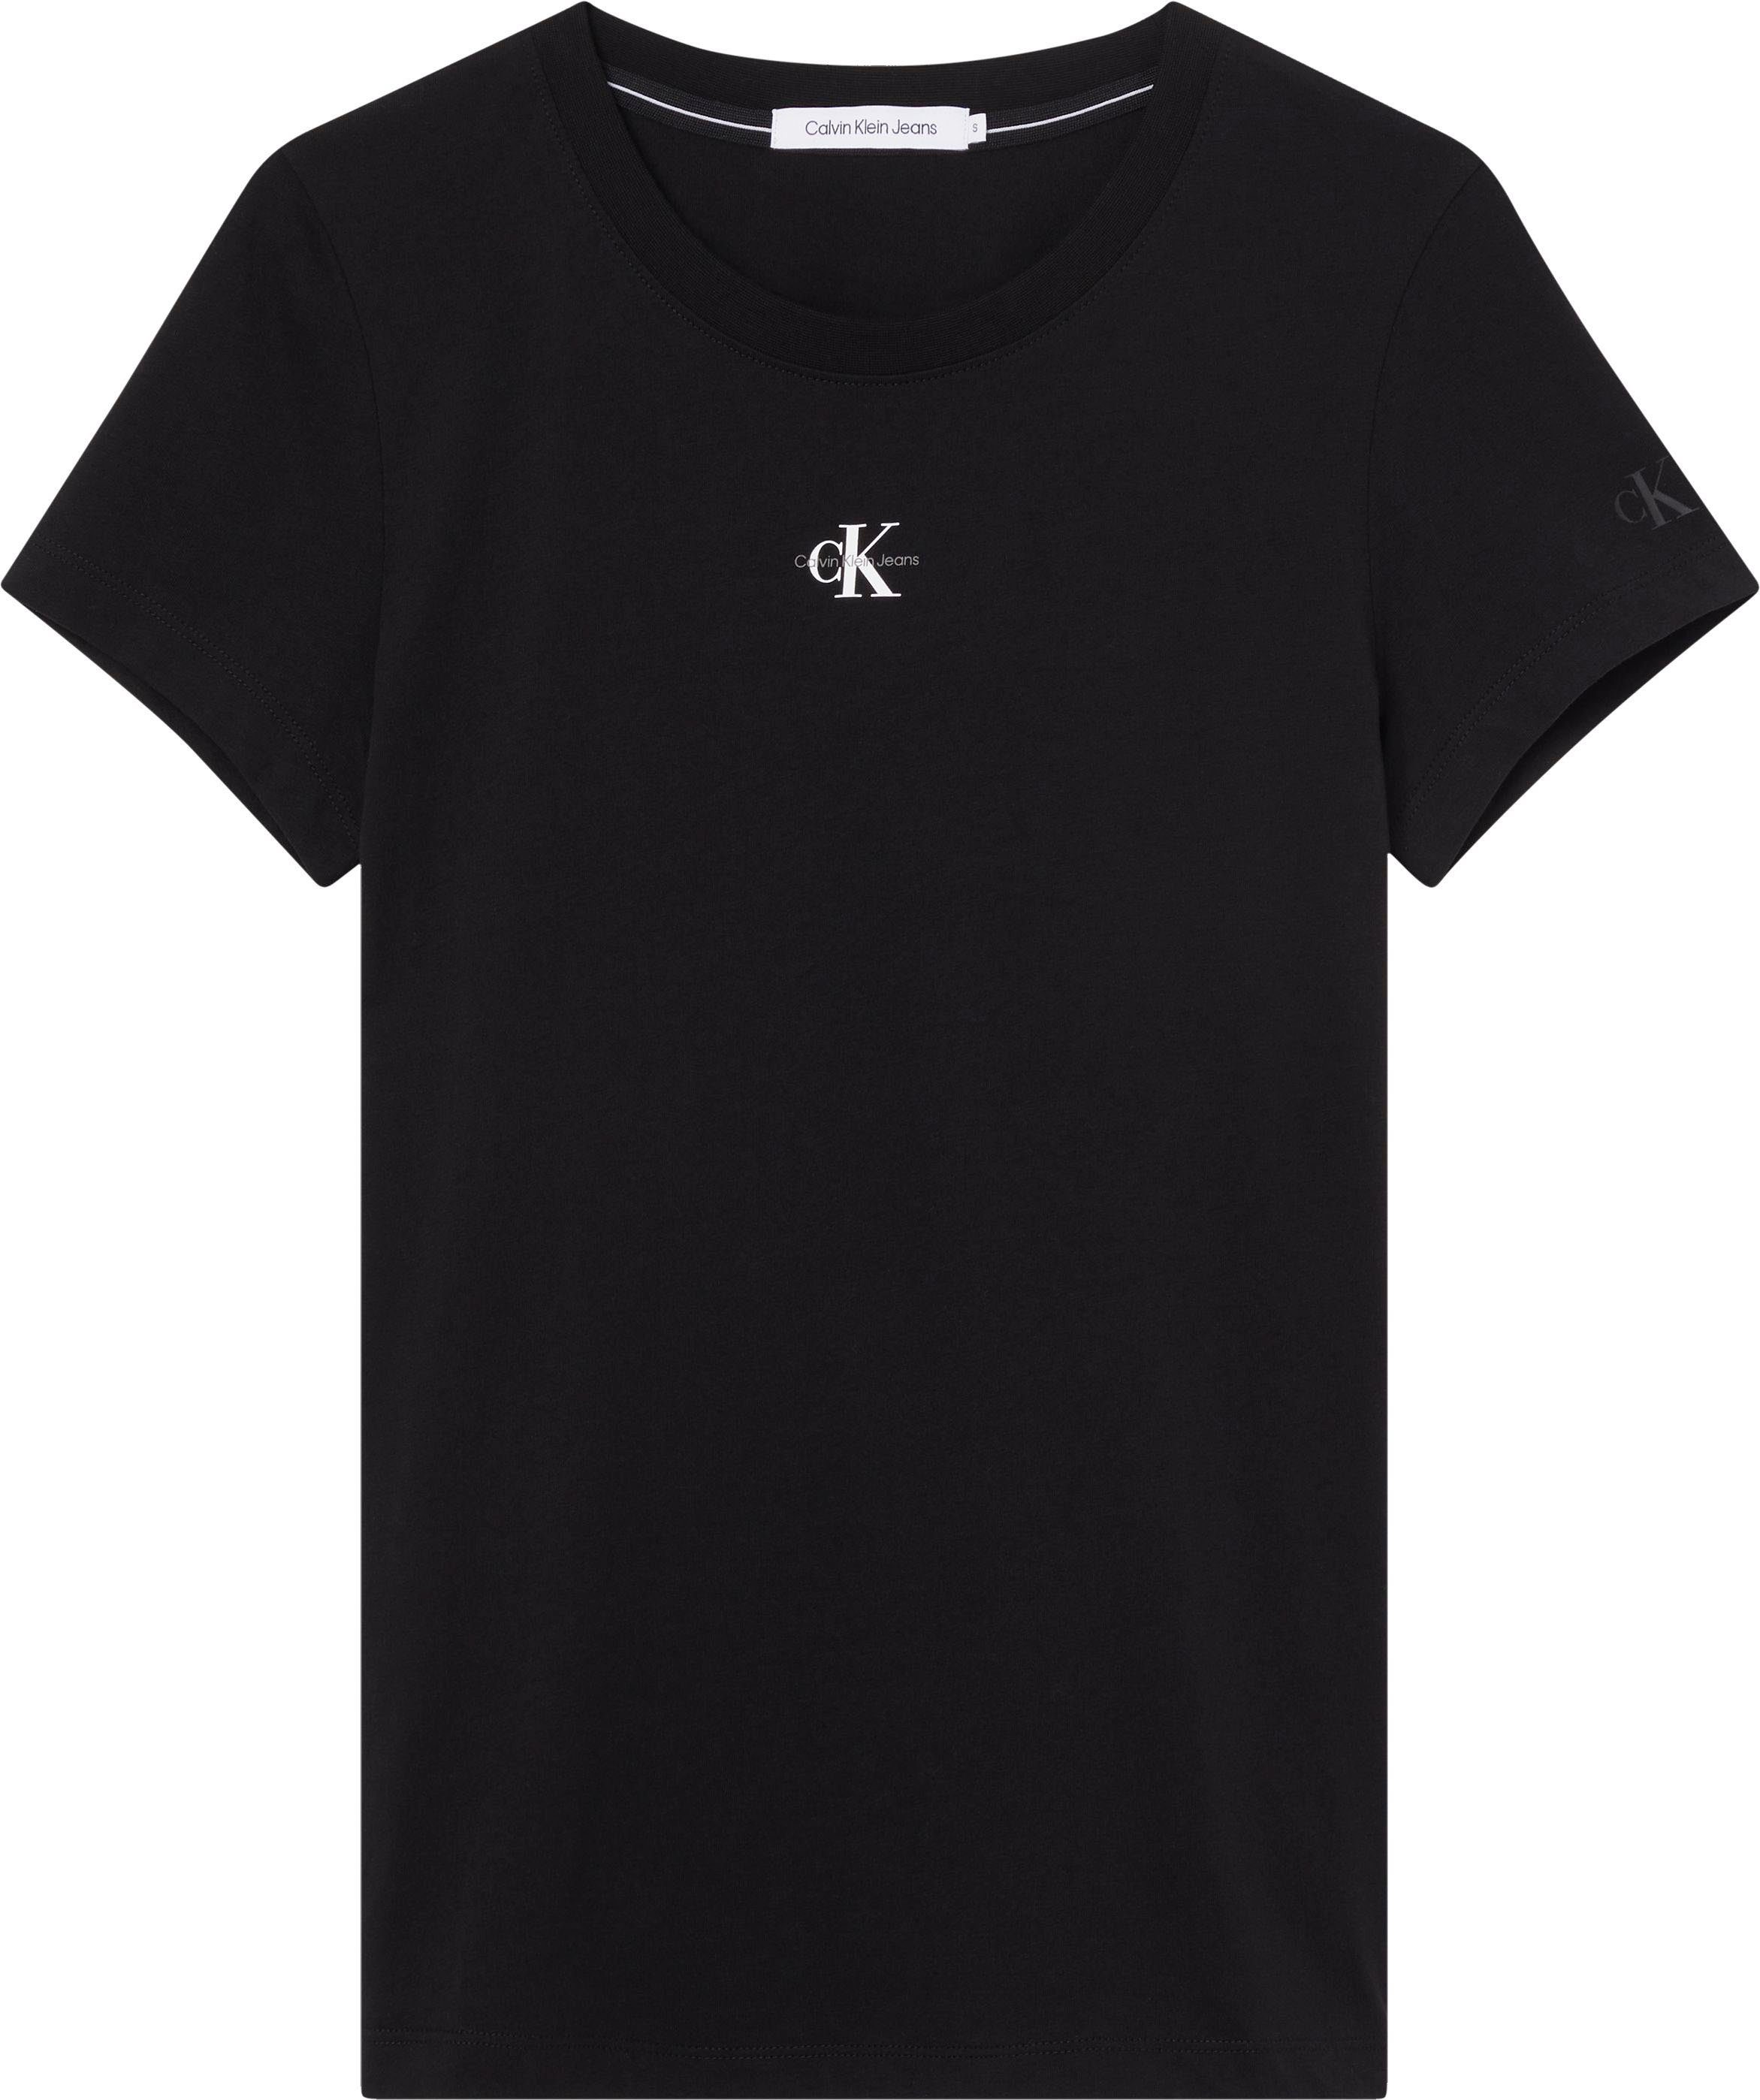 Calvin Klein Jeans MICRO SLIM TEE FIT MONOLOGO Black mit Ck T-Shirt Rundhalsausschnitt